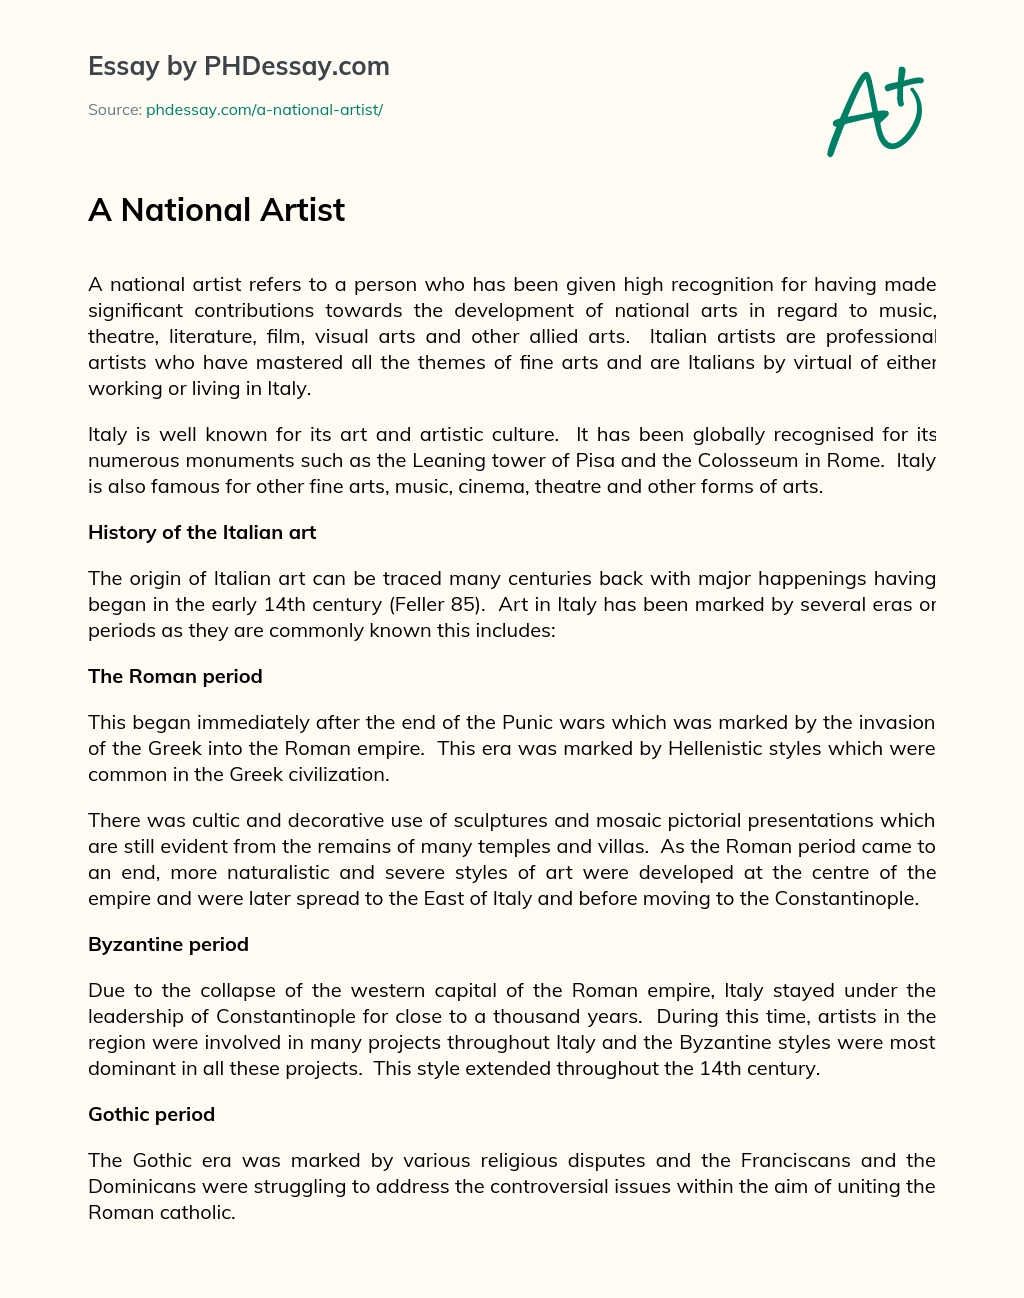 A National Artist essay